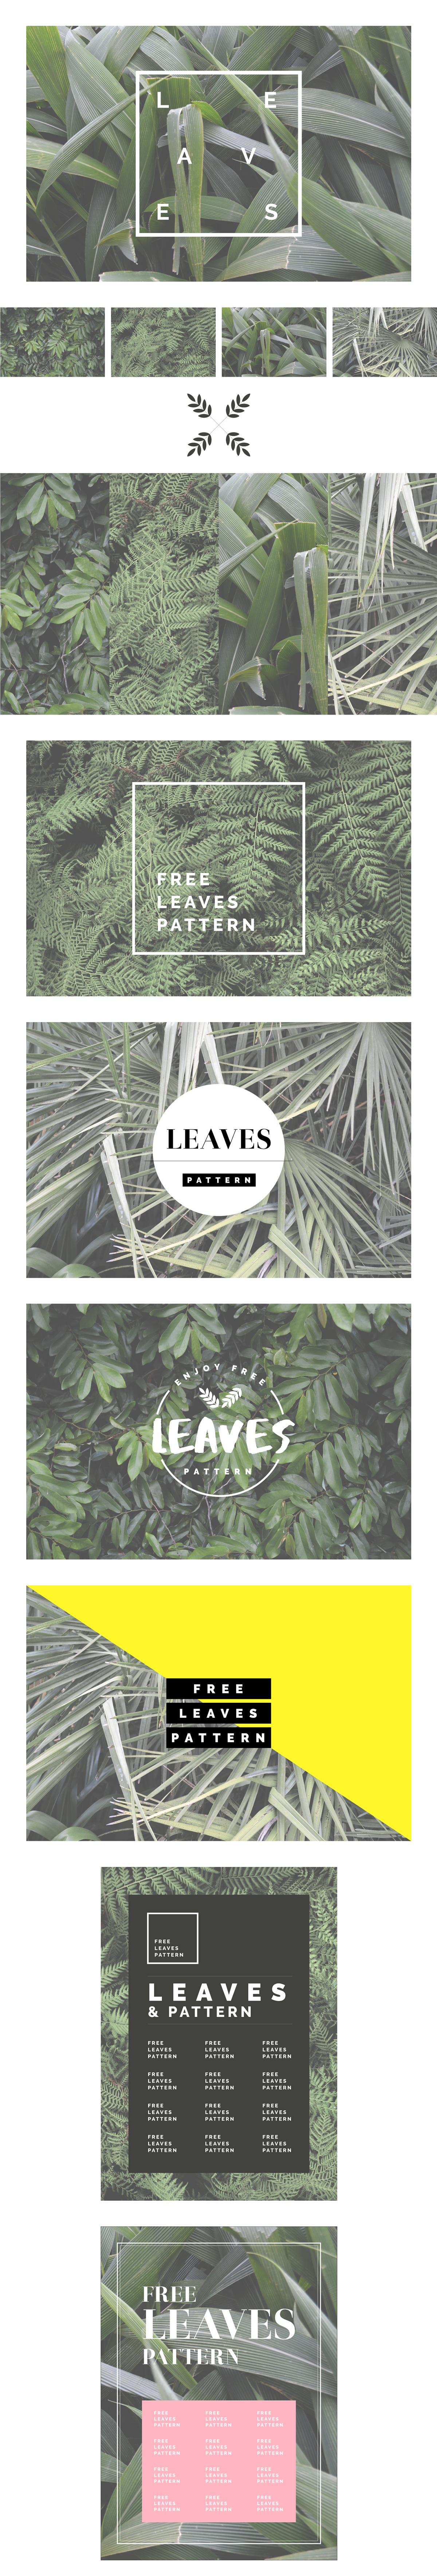 leaves leaf